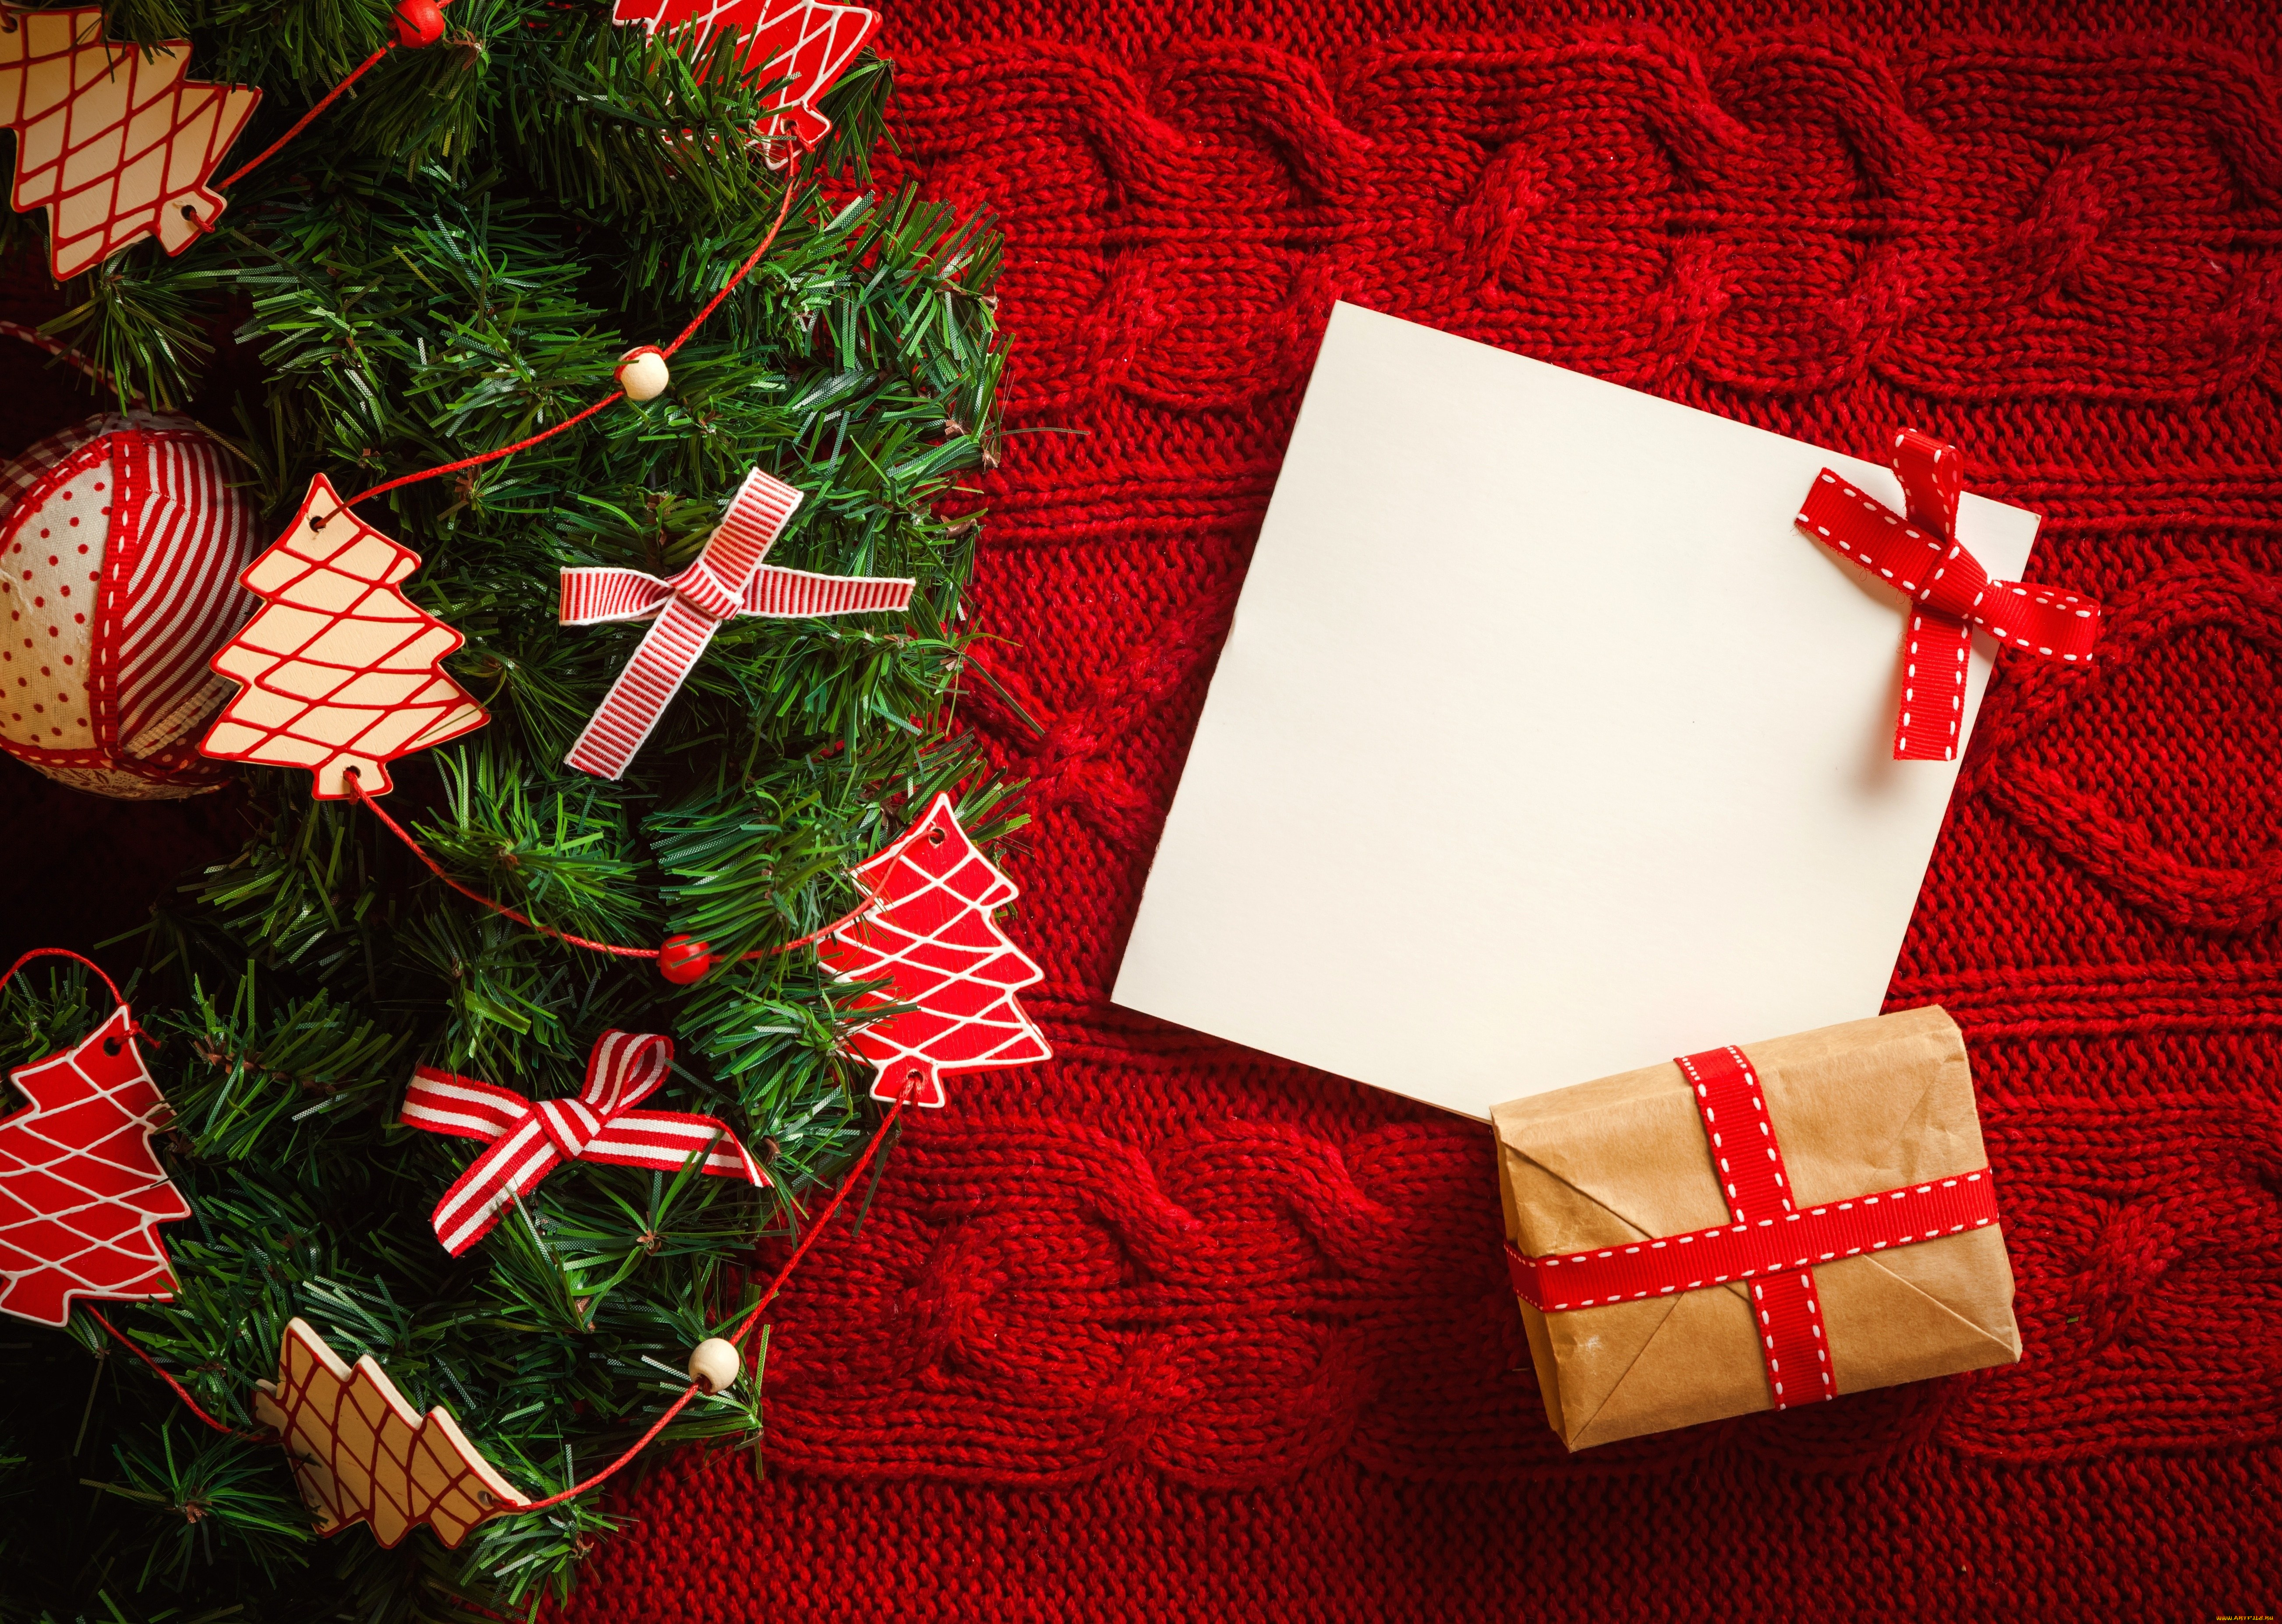 праздничные, разное, новый, год, box, ленты, с, новым, годом, рождество, праздник, подарок, merry, christmas, holiday, decoration, tree, gifts, рождественская, елка, ribbon, happy, new, year, украшения